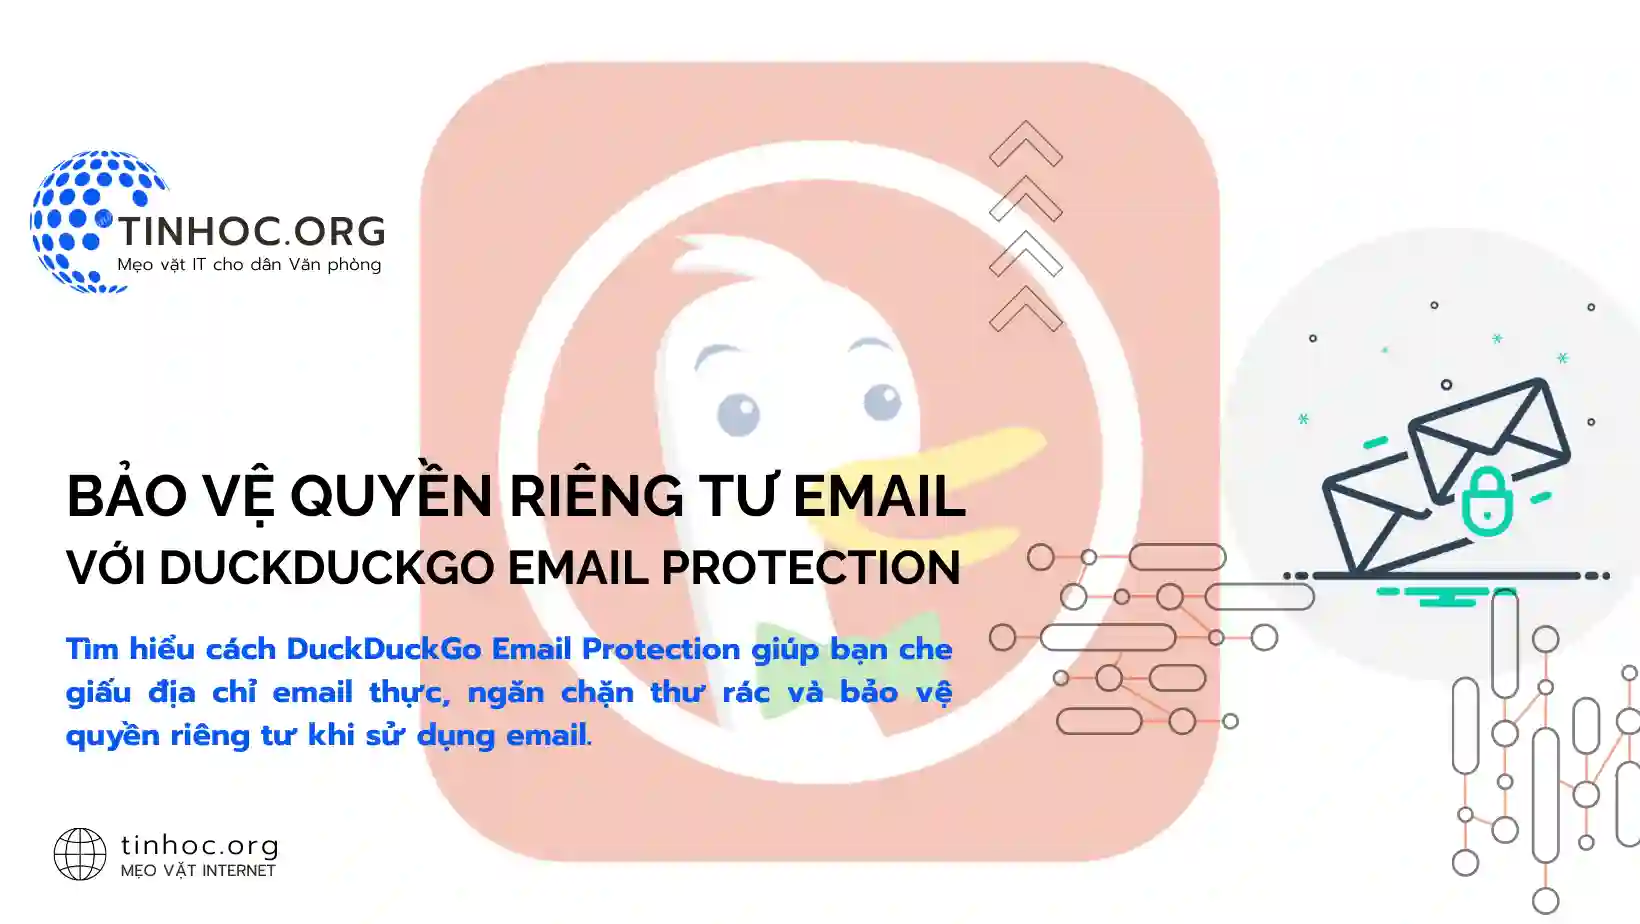 Bảo vệ quyền riêng tư email với DuckDuckGo Email Protection